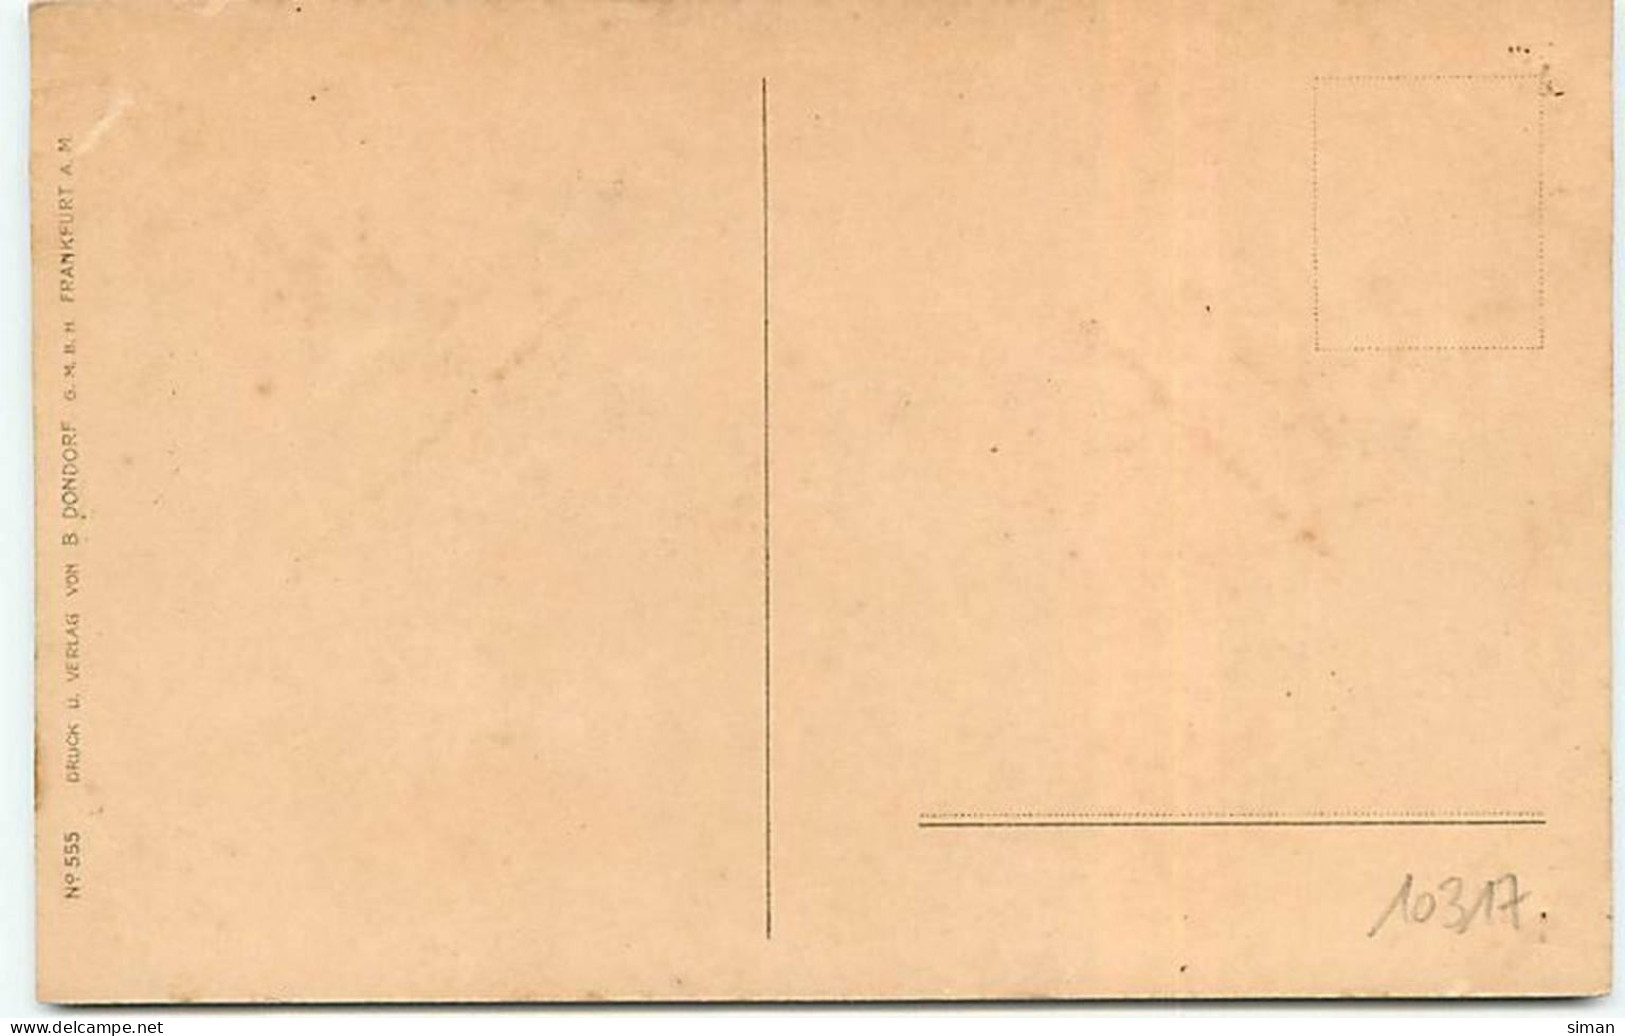 N°10317 - Carte Illustrateur - Ethel Parkinson - Jeunes Hollandais : Waschtag - Parkinson, Ethel